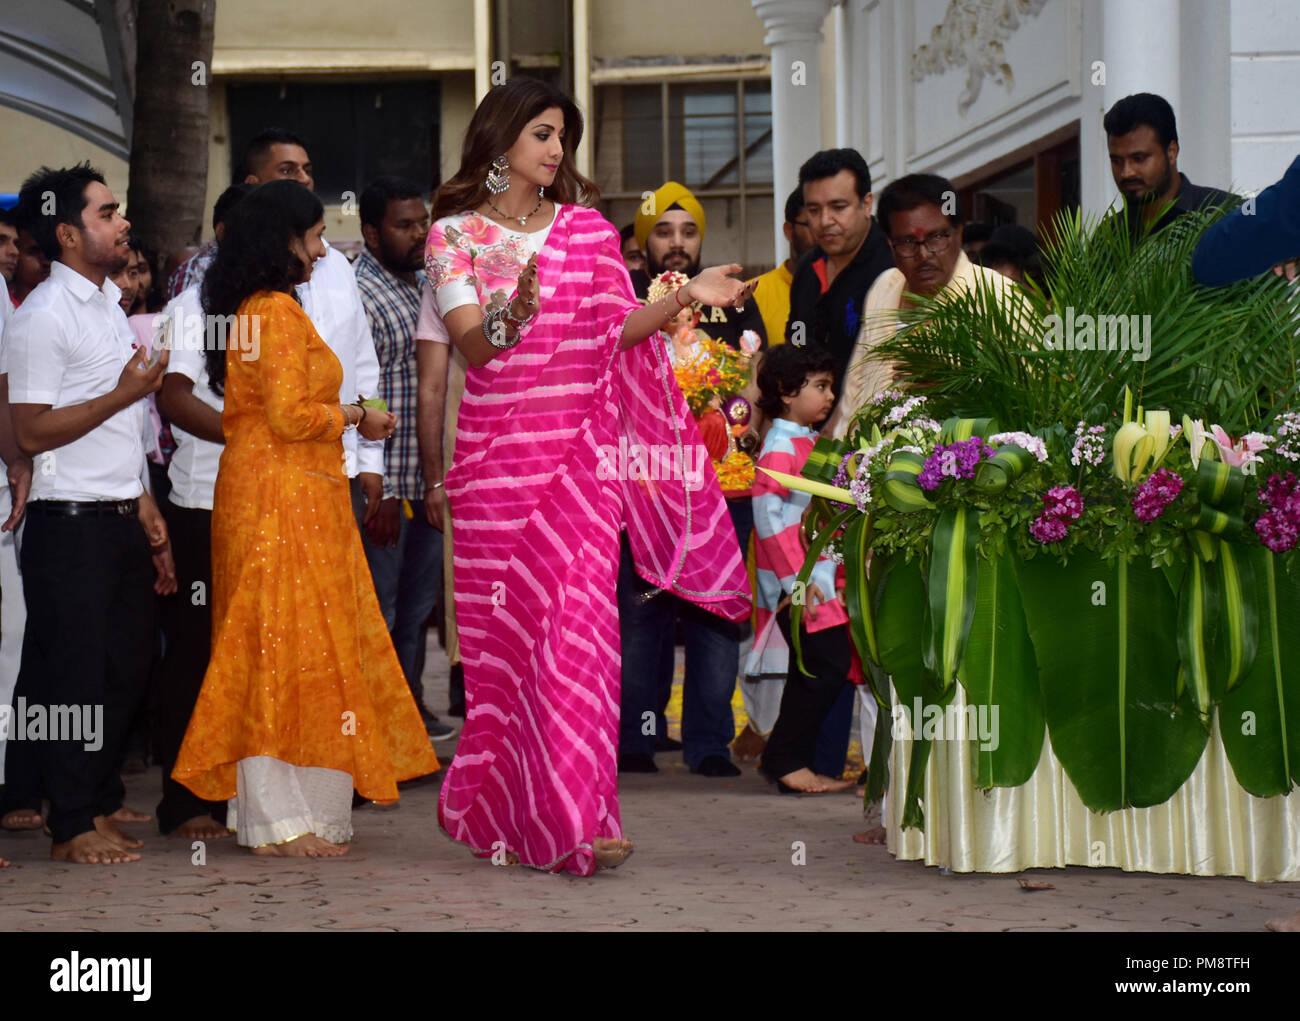 L'actrice indienne Shilpa Shetty film vu réjouissance lors d'une procession à la maison. Une procession pour l'immersion d'une idole du dieu Hindou à tête d'éléphant Ganesh, seigneur de dévots hindous prendre accueil idoles de Seigneur Ganesha pour invoquer ses bénédictions pour la sagesse et la prospérité. Banque D'Images